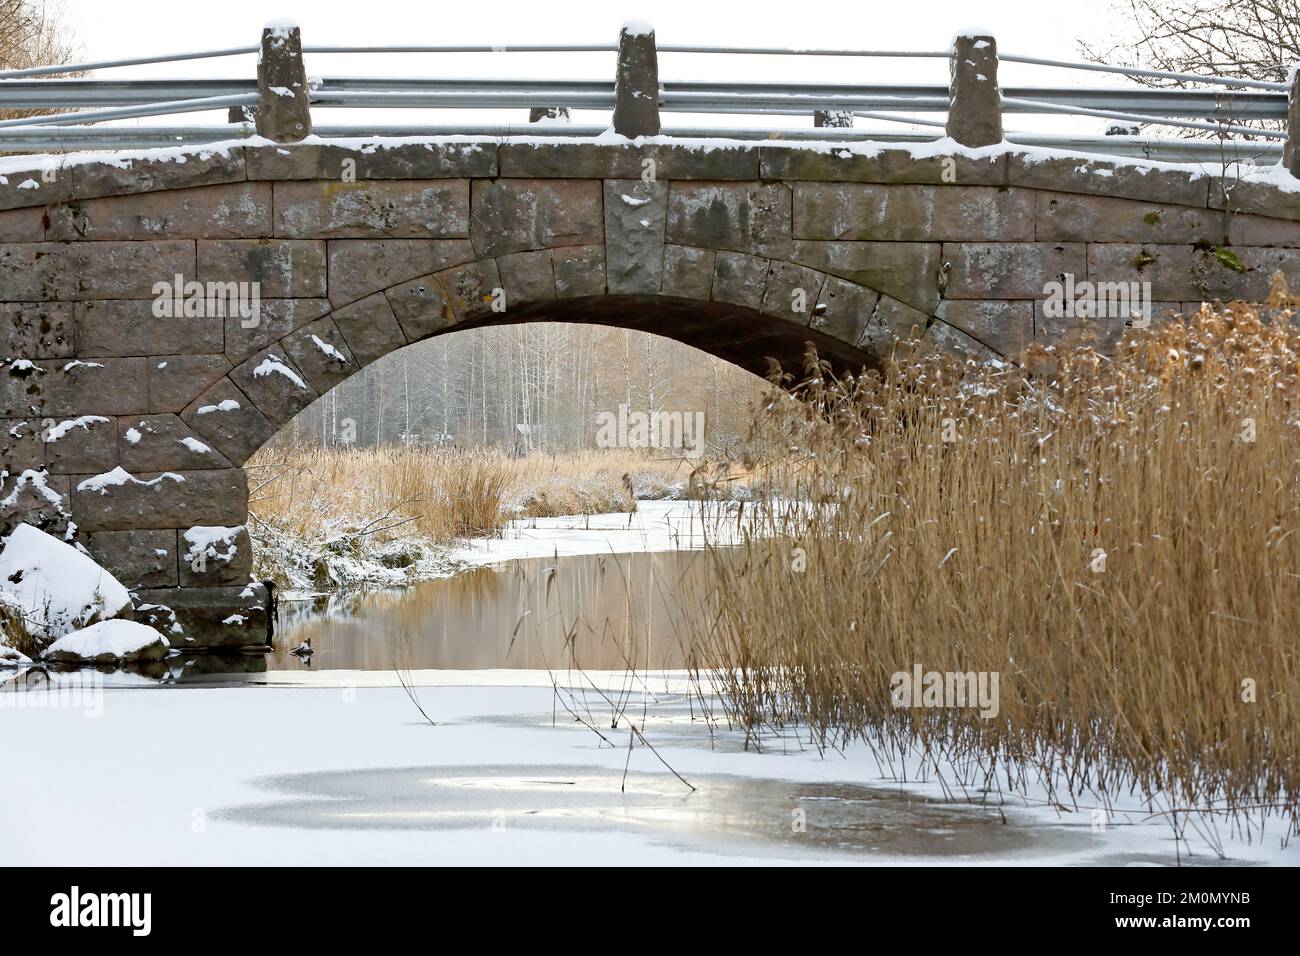 An old stony bridge over narrow freezing river Stock Photo